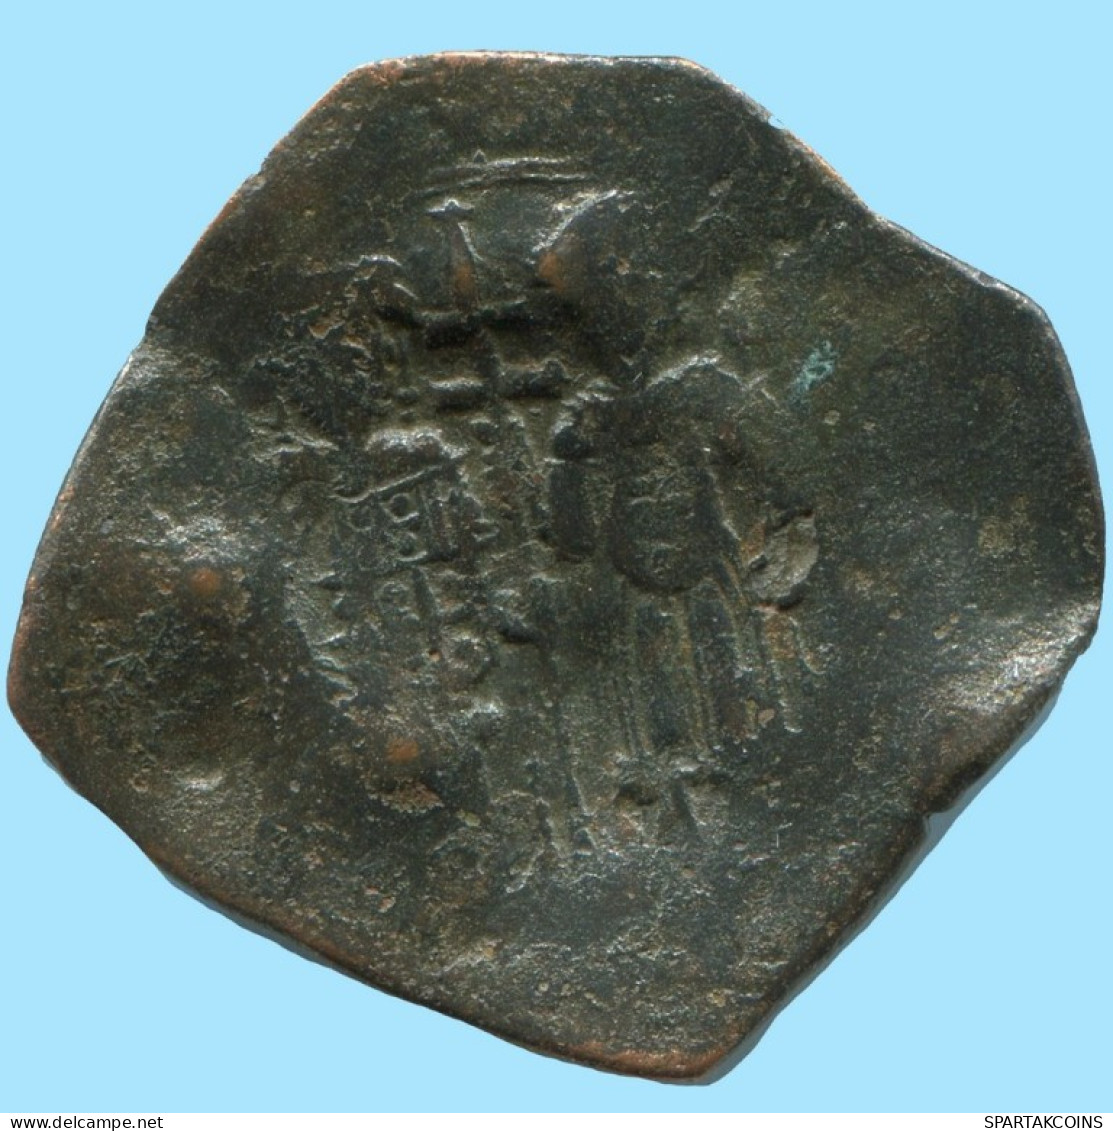 ALEXIOS III ANGELOS ASPRON TRACHY BILLON BYZANTINE Moneda 2.7g/27mm #AB455.9.E.A - Bizantinas